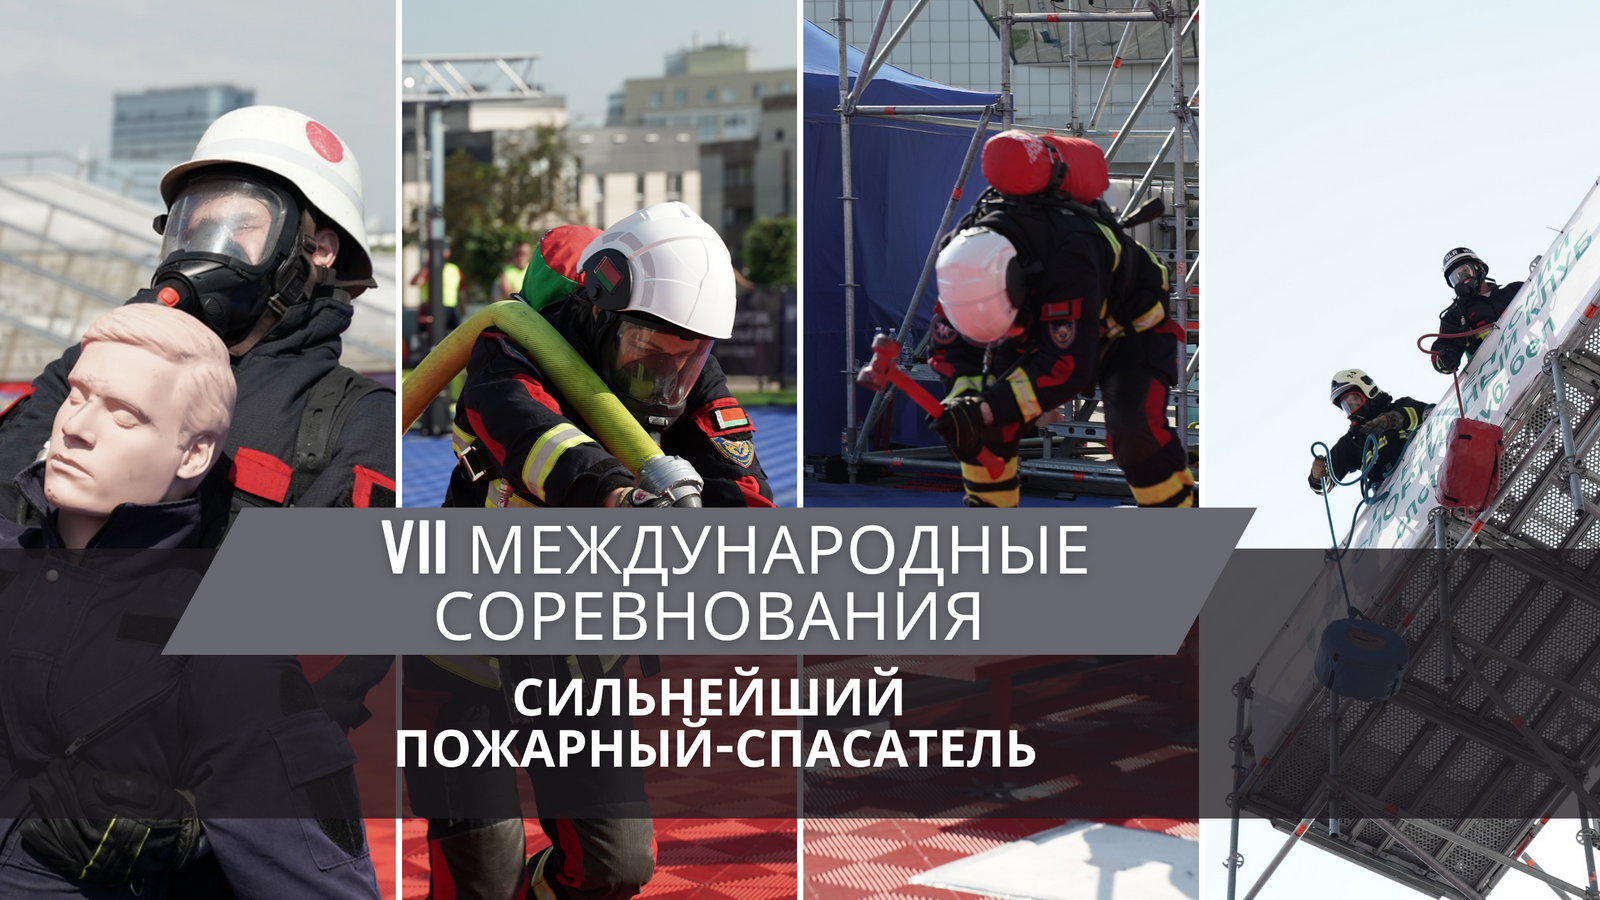 Вьетнам и три команды из России – в День города в Минске пройдут международные соревнования «Сильнейший пожарный-спасатель» 